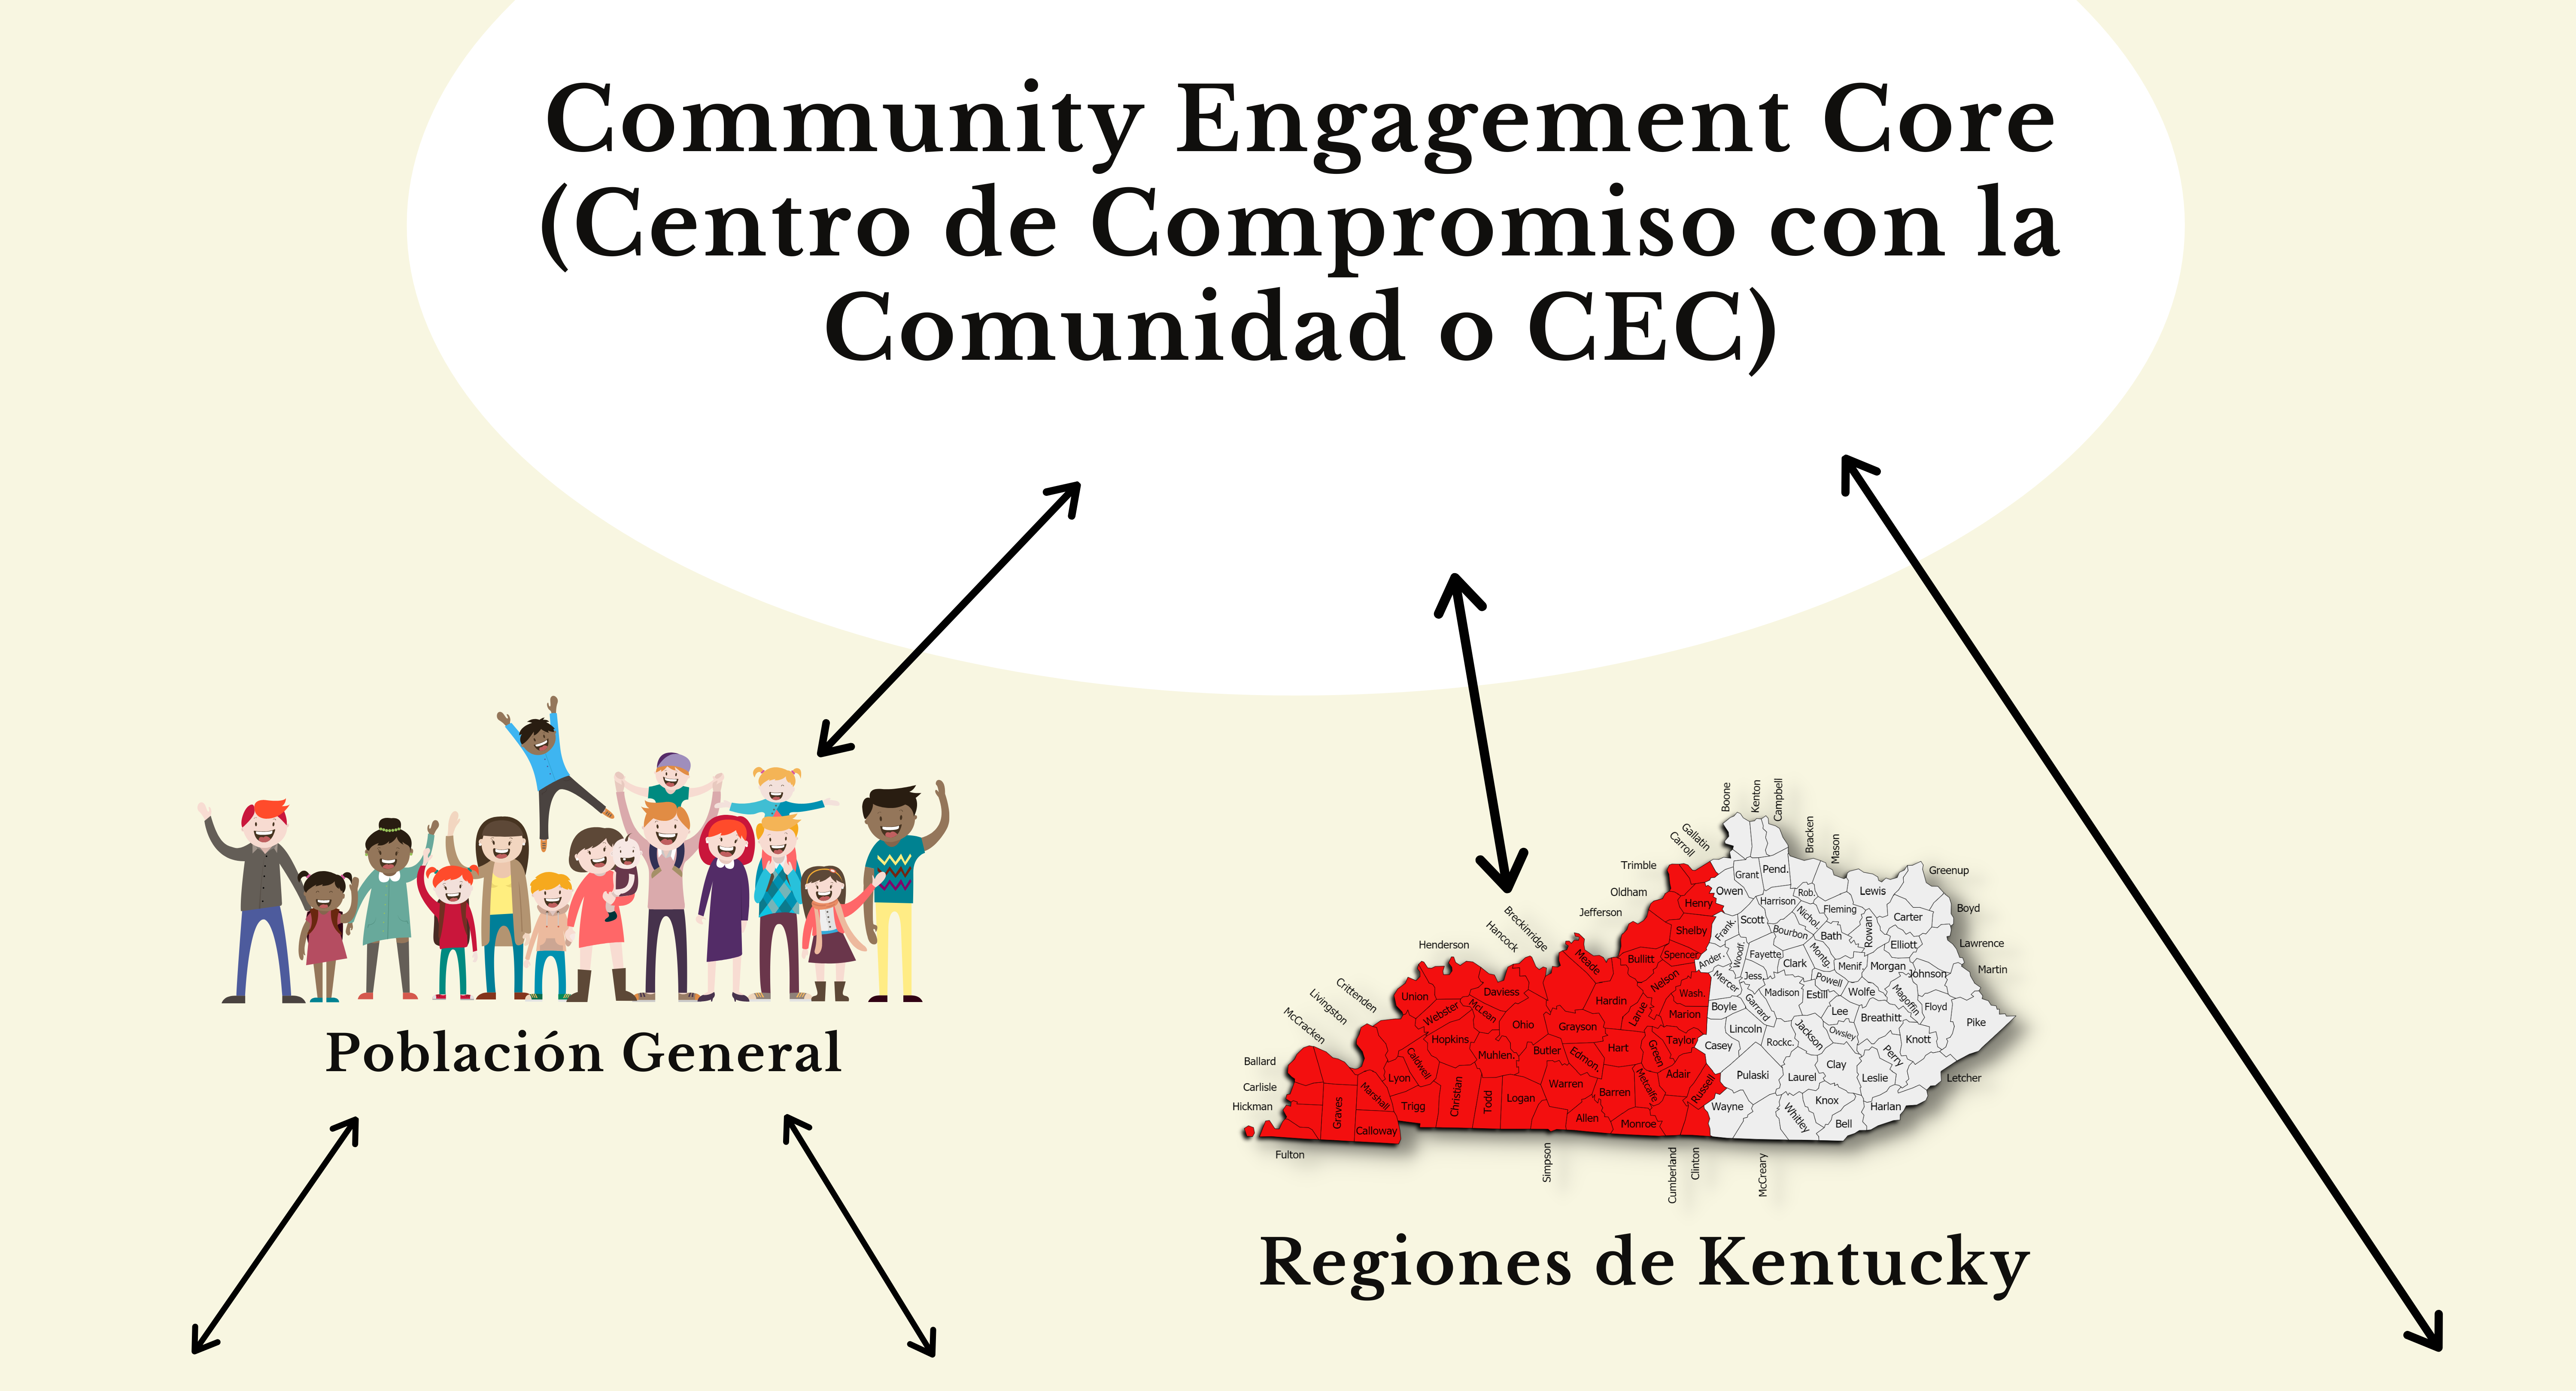 Community Engagement Core (Centro de Compromiso con la Comunidad o CEC Diagrama del CEC)